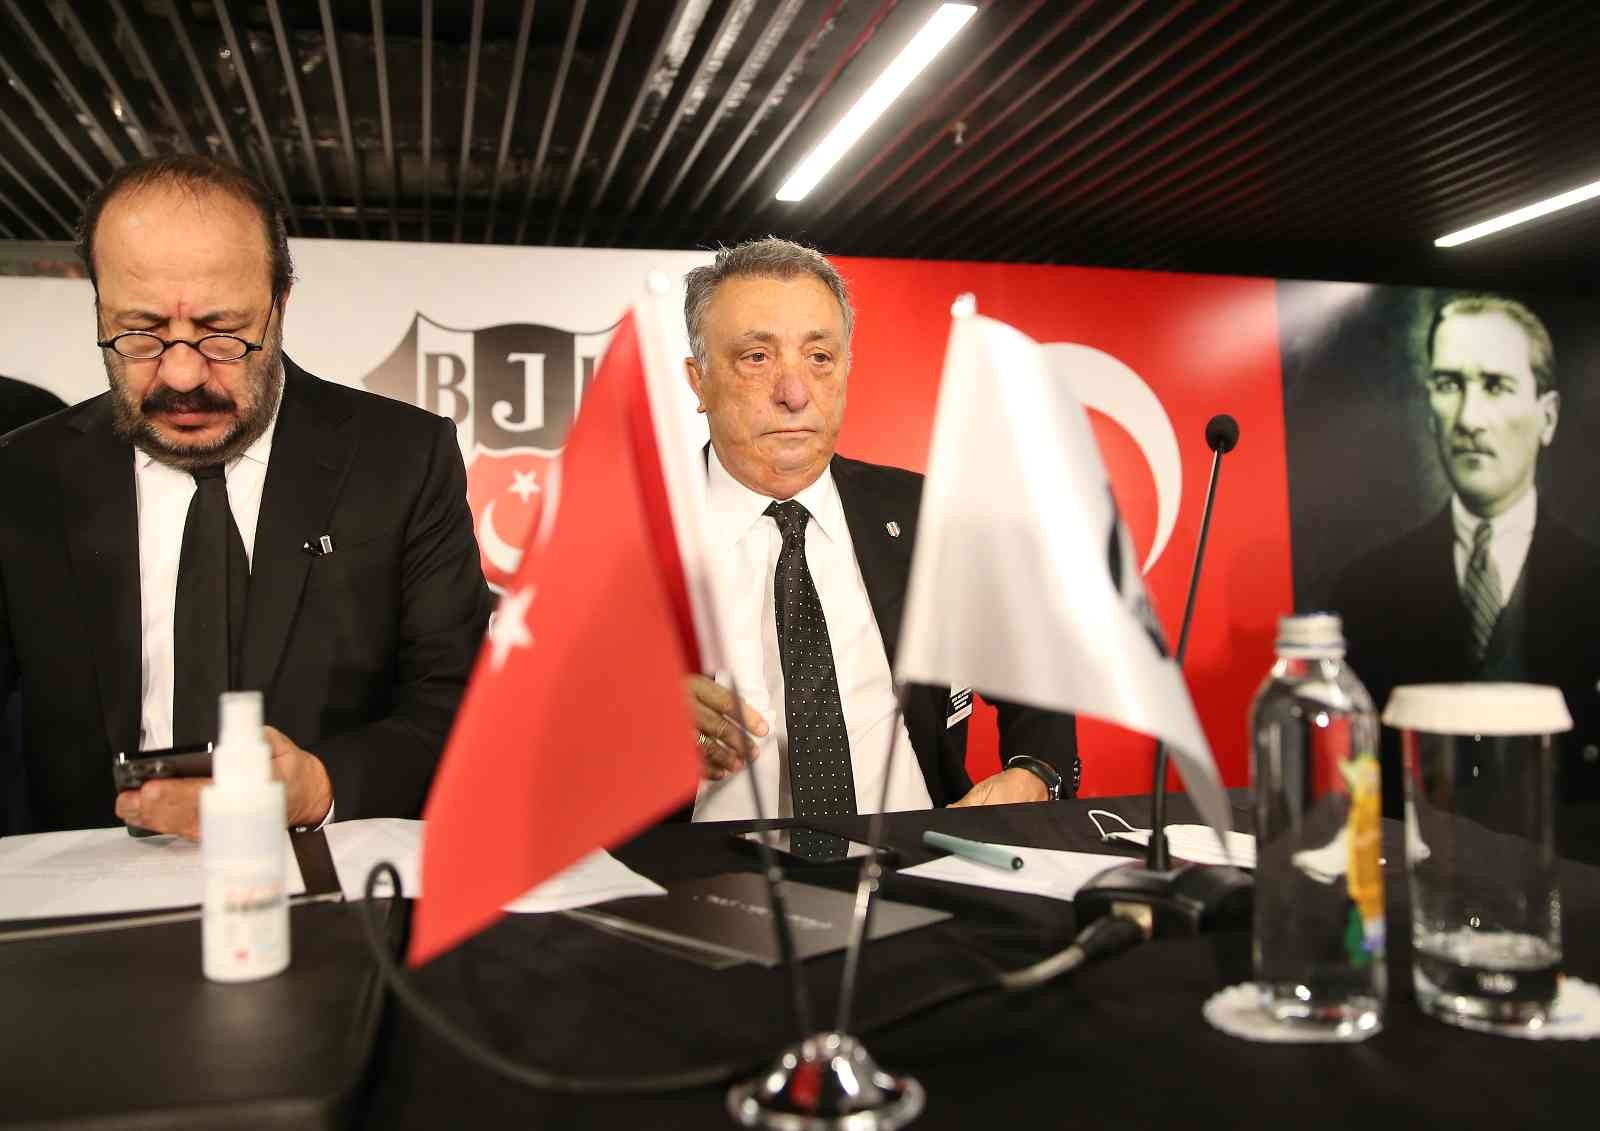 Beşiktaş Divan Kurulu başladı #istanbul